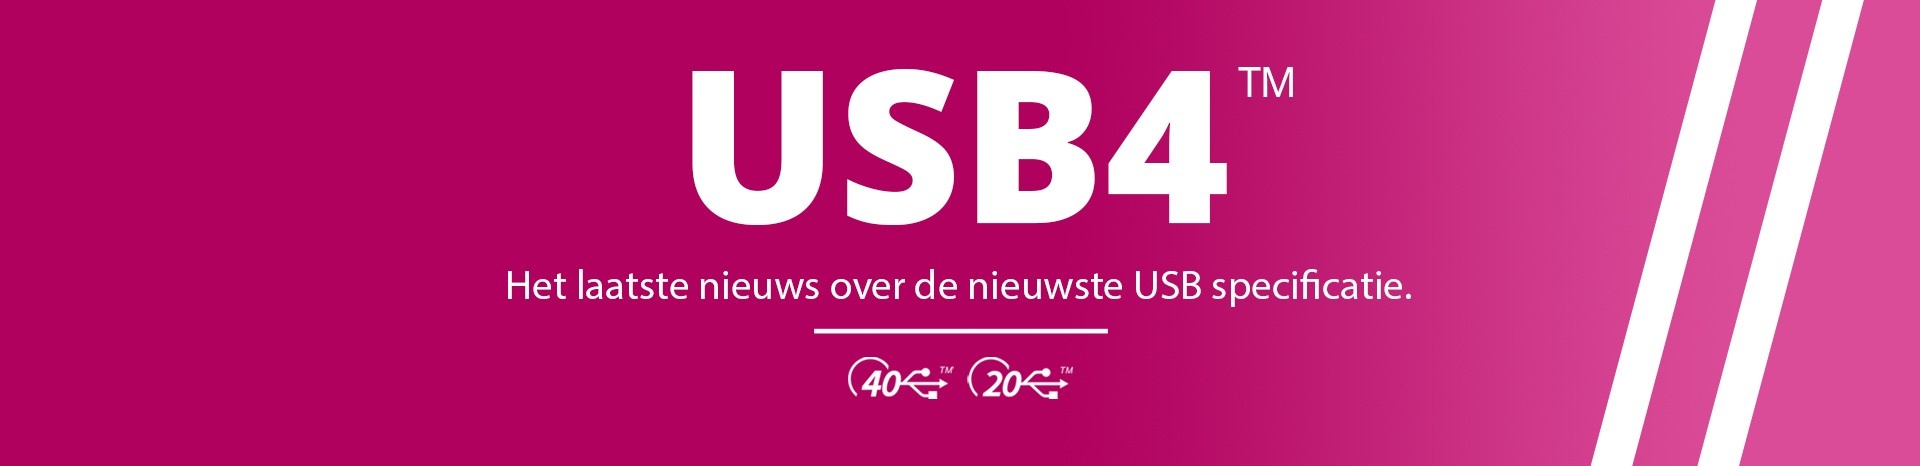 USB4, het laatste nieuws over de nieuwste USB specificatie